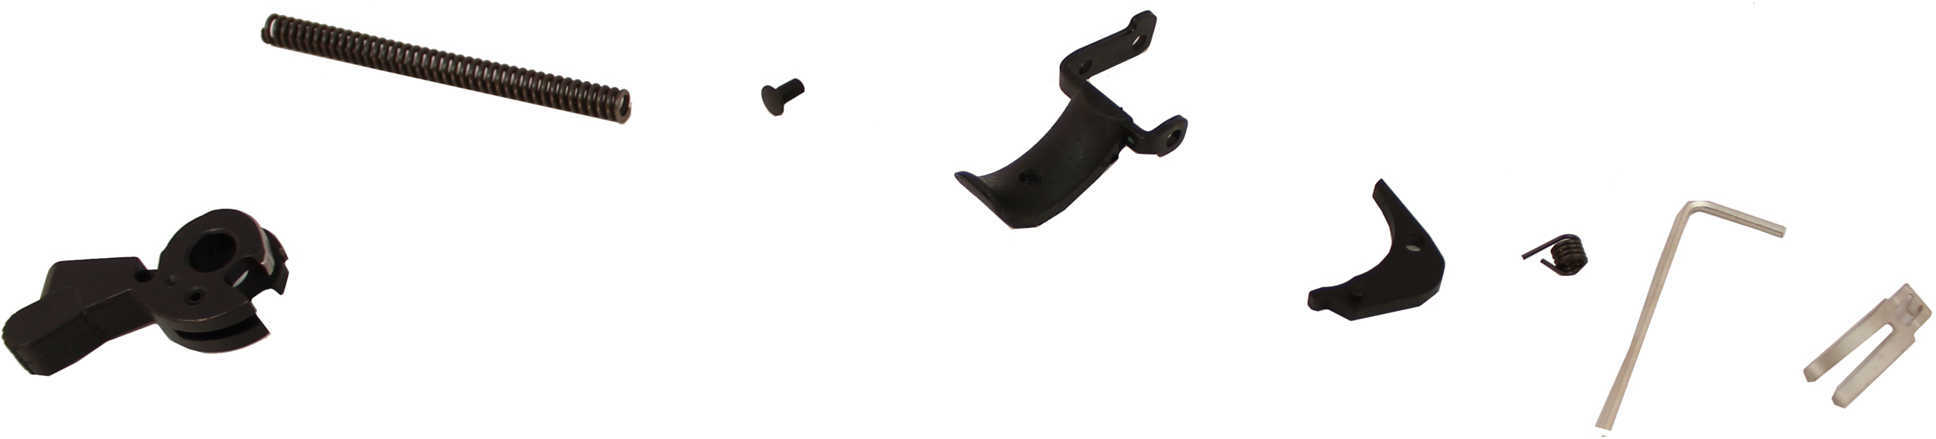 Heckler & Koch Match Trigger Kit, Full-Size USP only 216169R